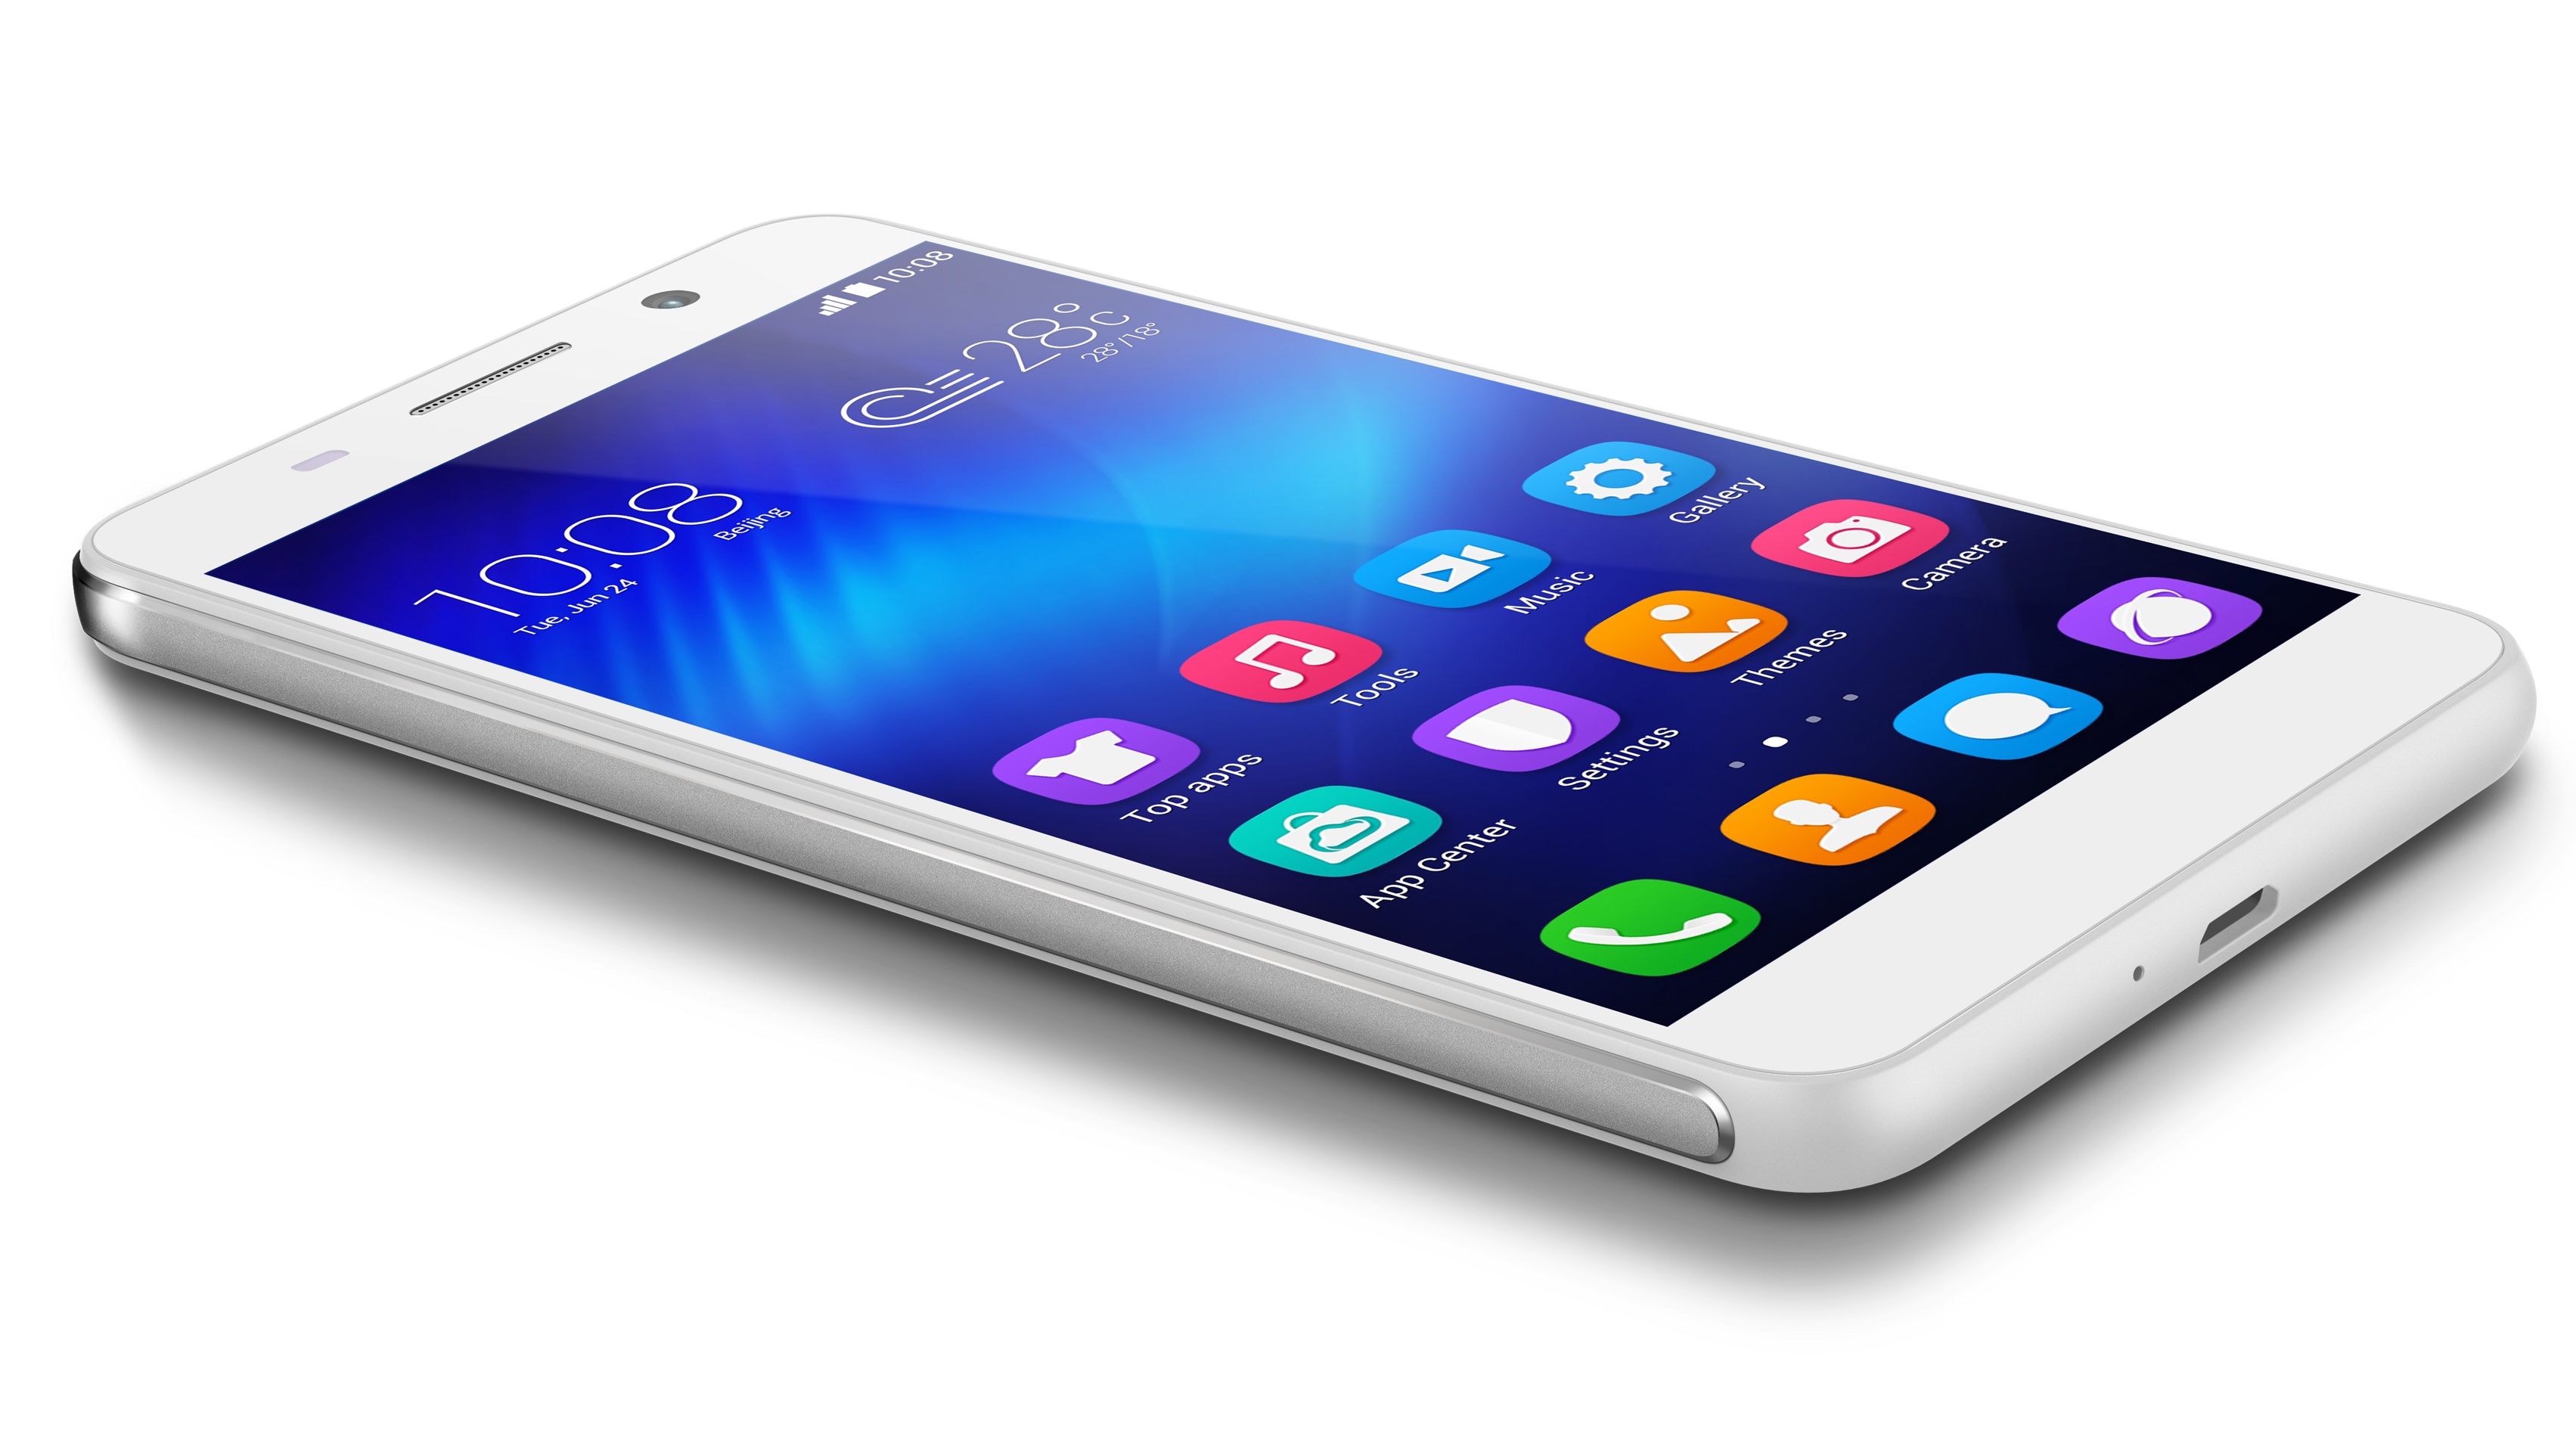 Ponsel cerdas Honor 6 membuang merek Huawei untuk melakukannya sendiri